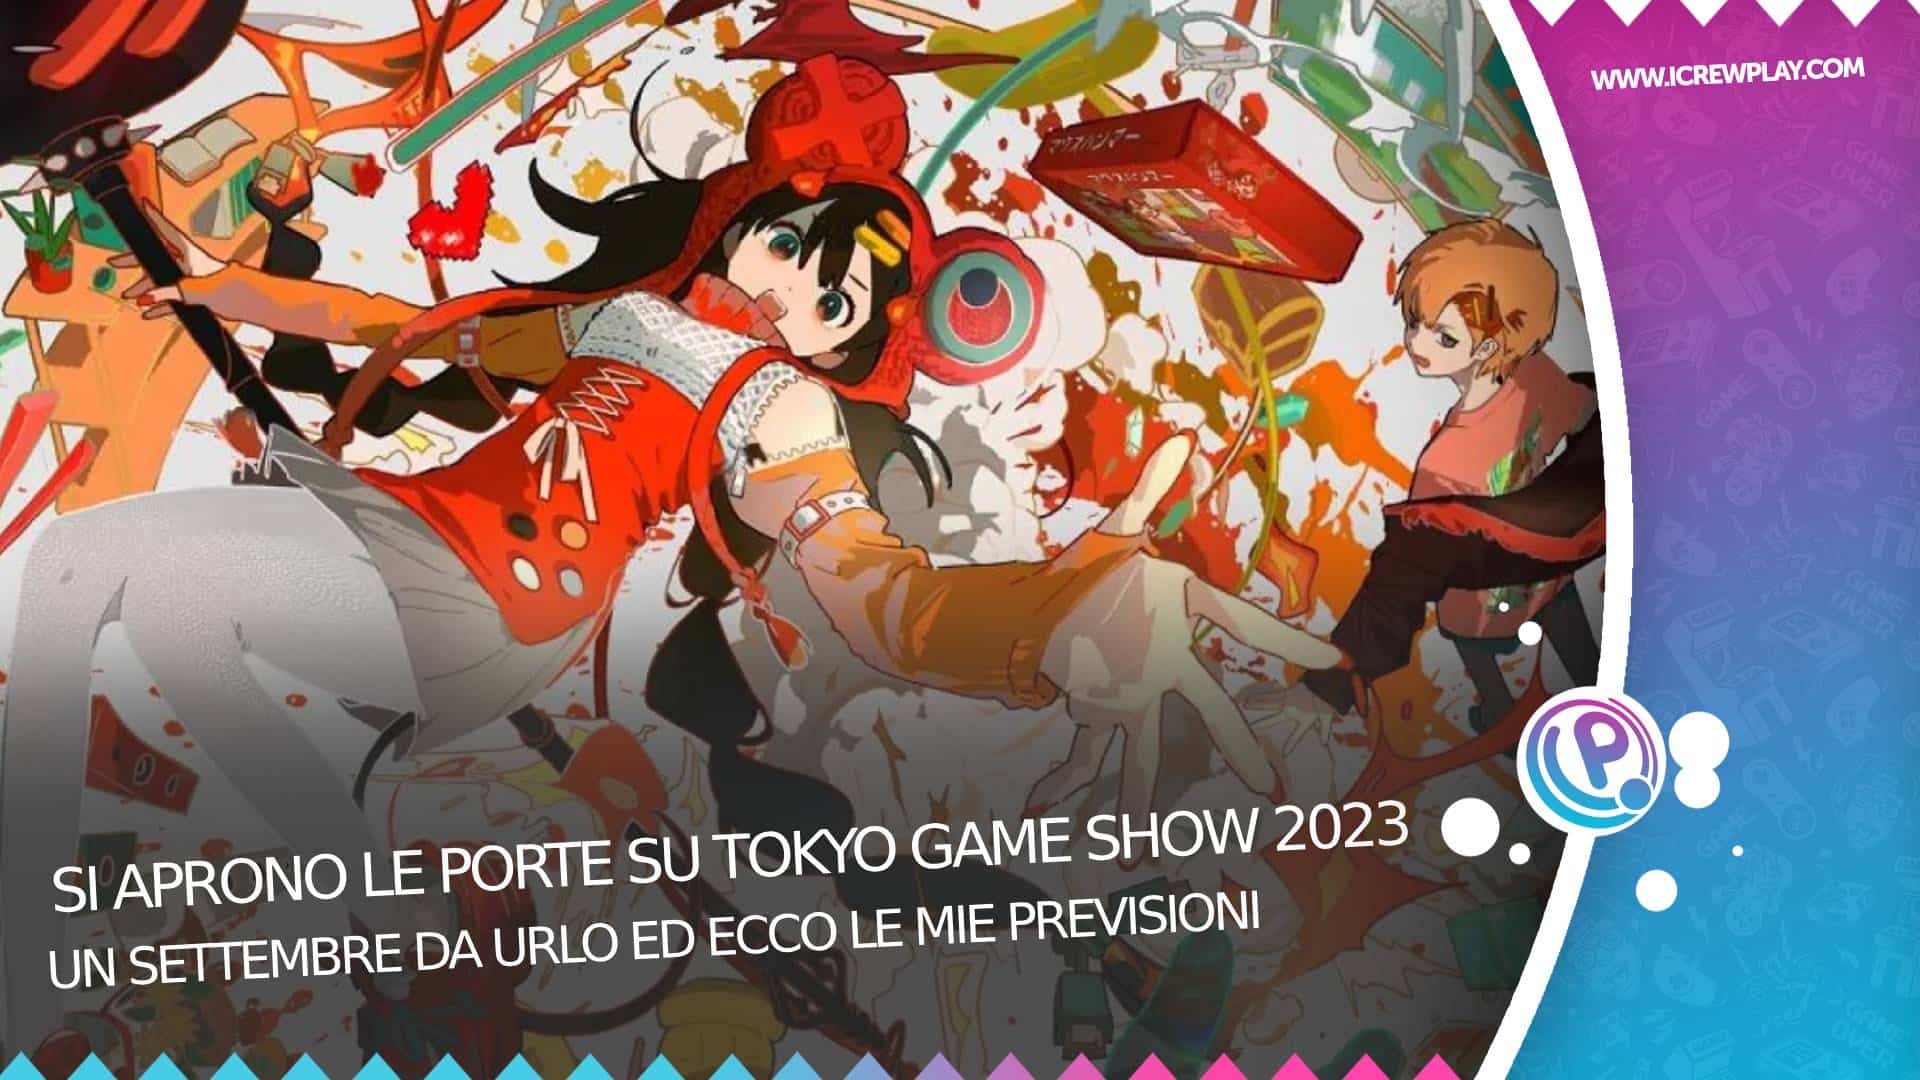 Si aprono le porte su Tokyo game show 2023 2